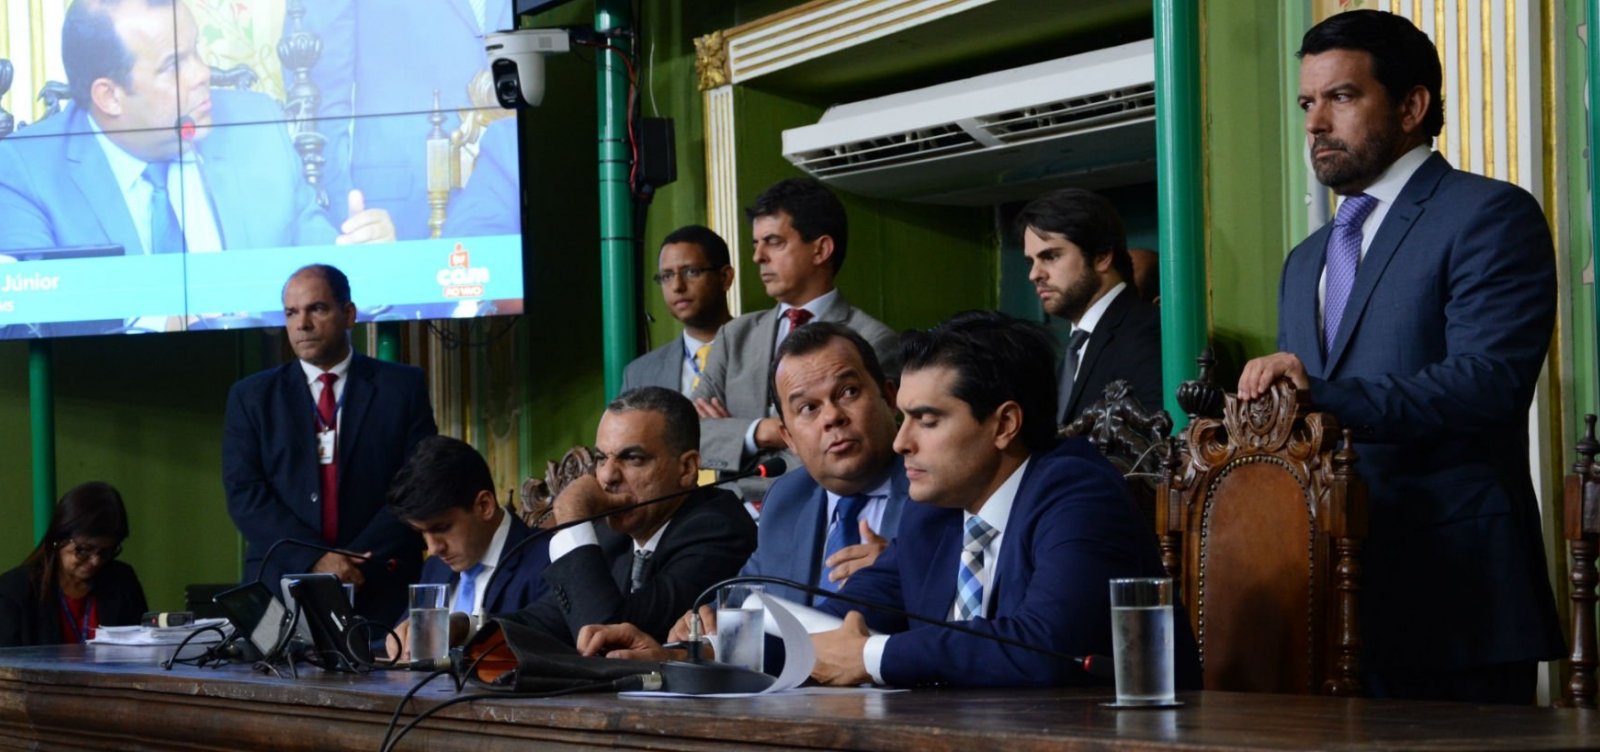 Câmara de Salvador aprova projeto de locação de imóveis por até 30 anos